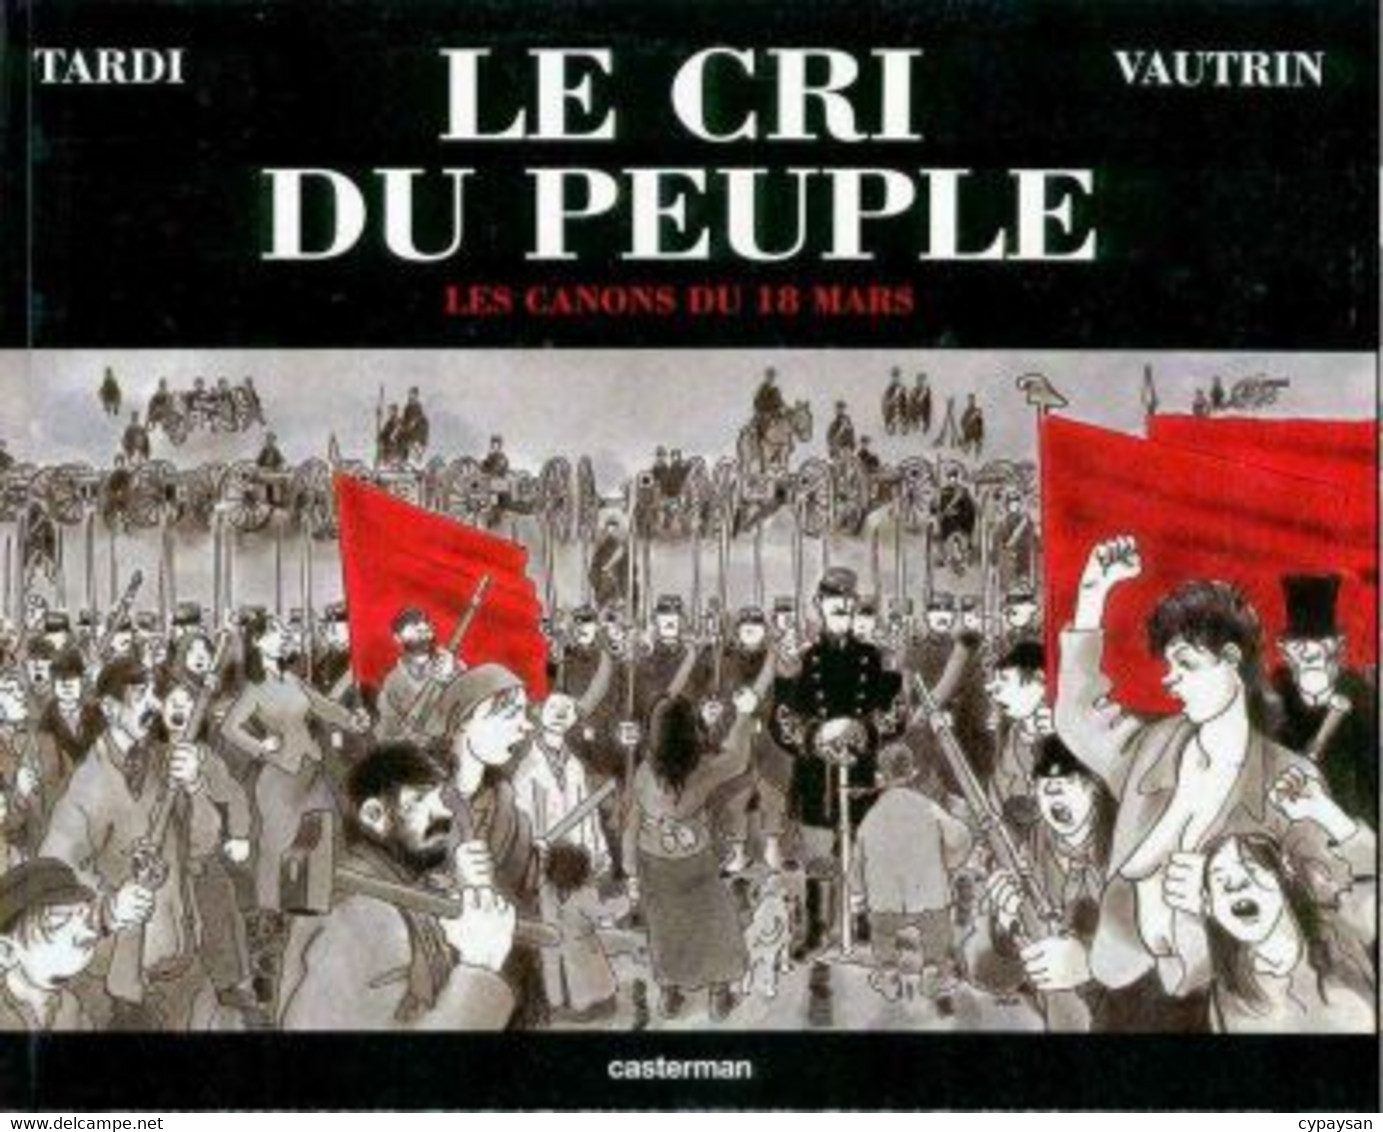 Cri Du Peuple 1 Les Canons Du 18 Marss EO BE Casterman 10/2001 Tardi Vautrin (BI4) - Cri Du Peuple, Le